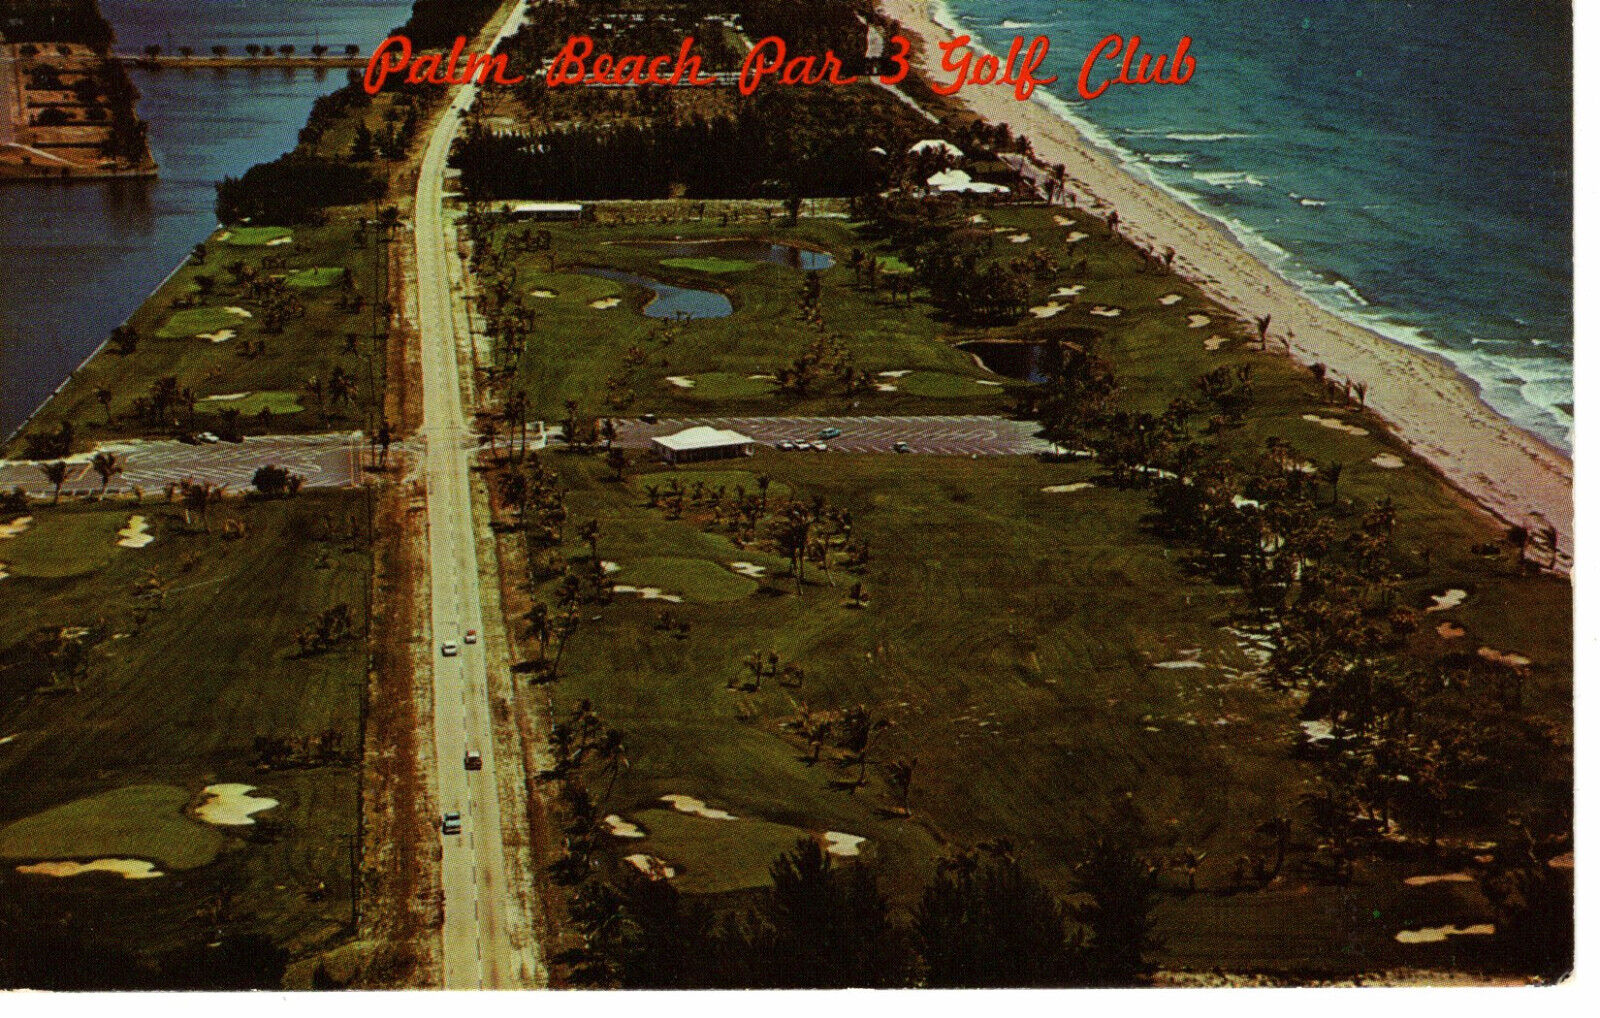 Vintage Postcard Palm Beach Par 3 Golf Club Aeiral View Beach c1964 -1561